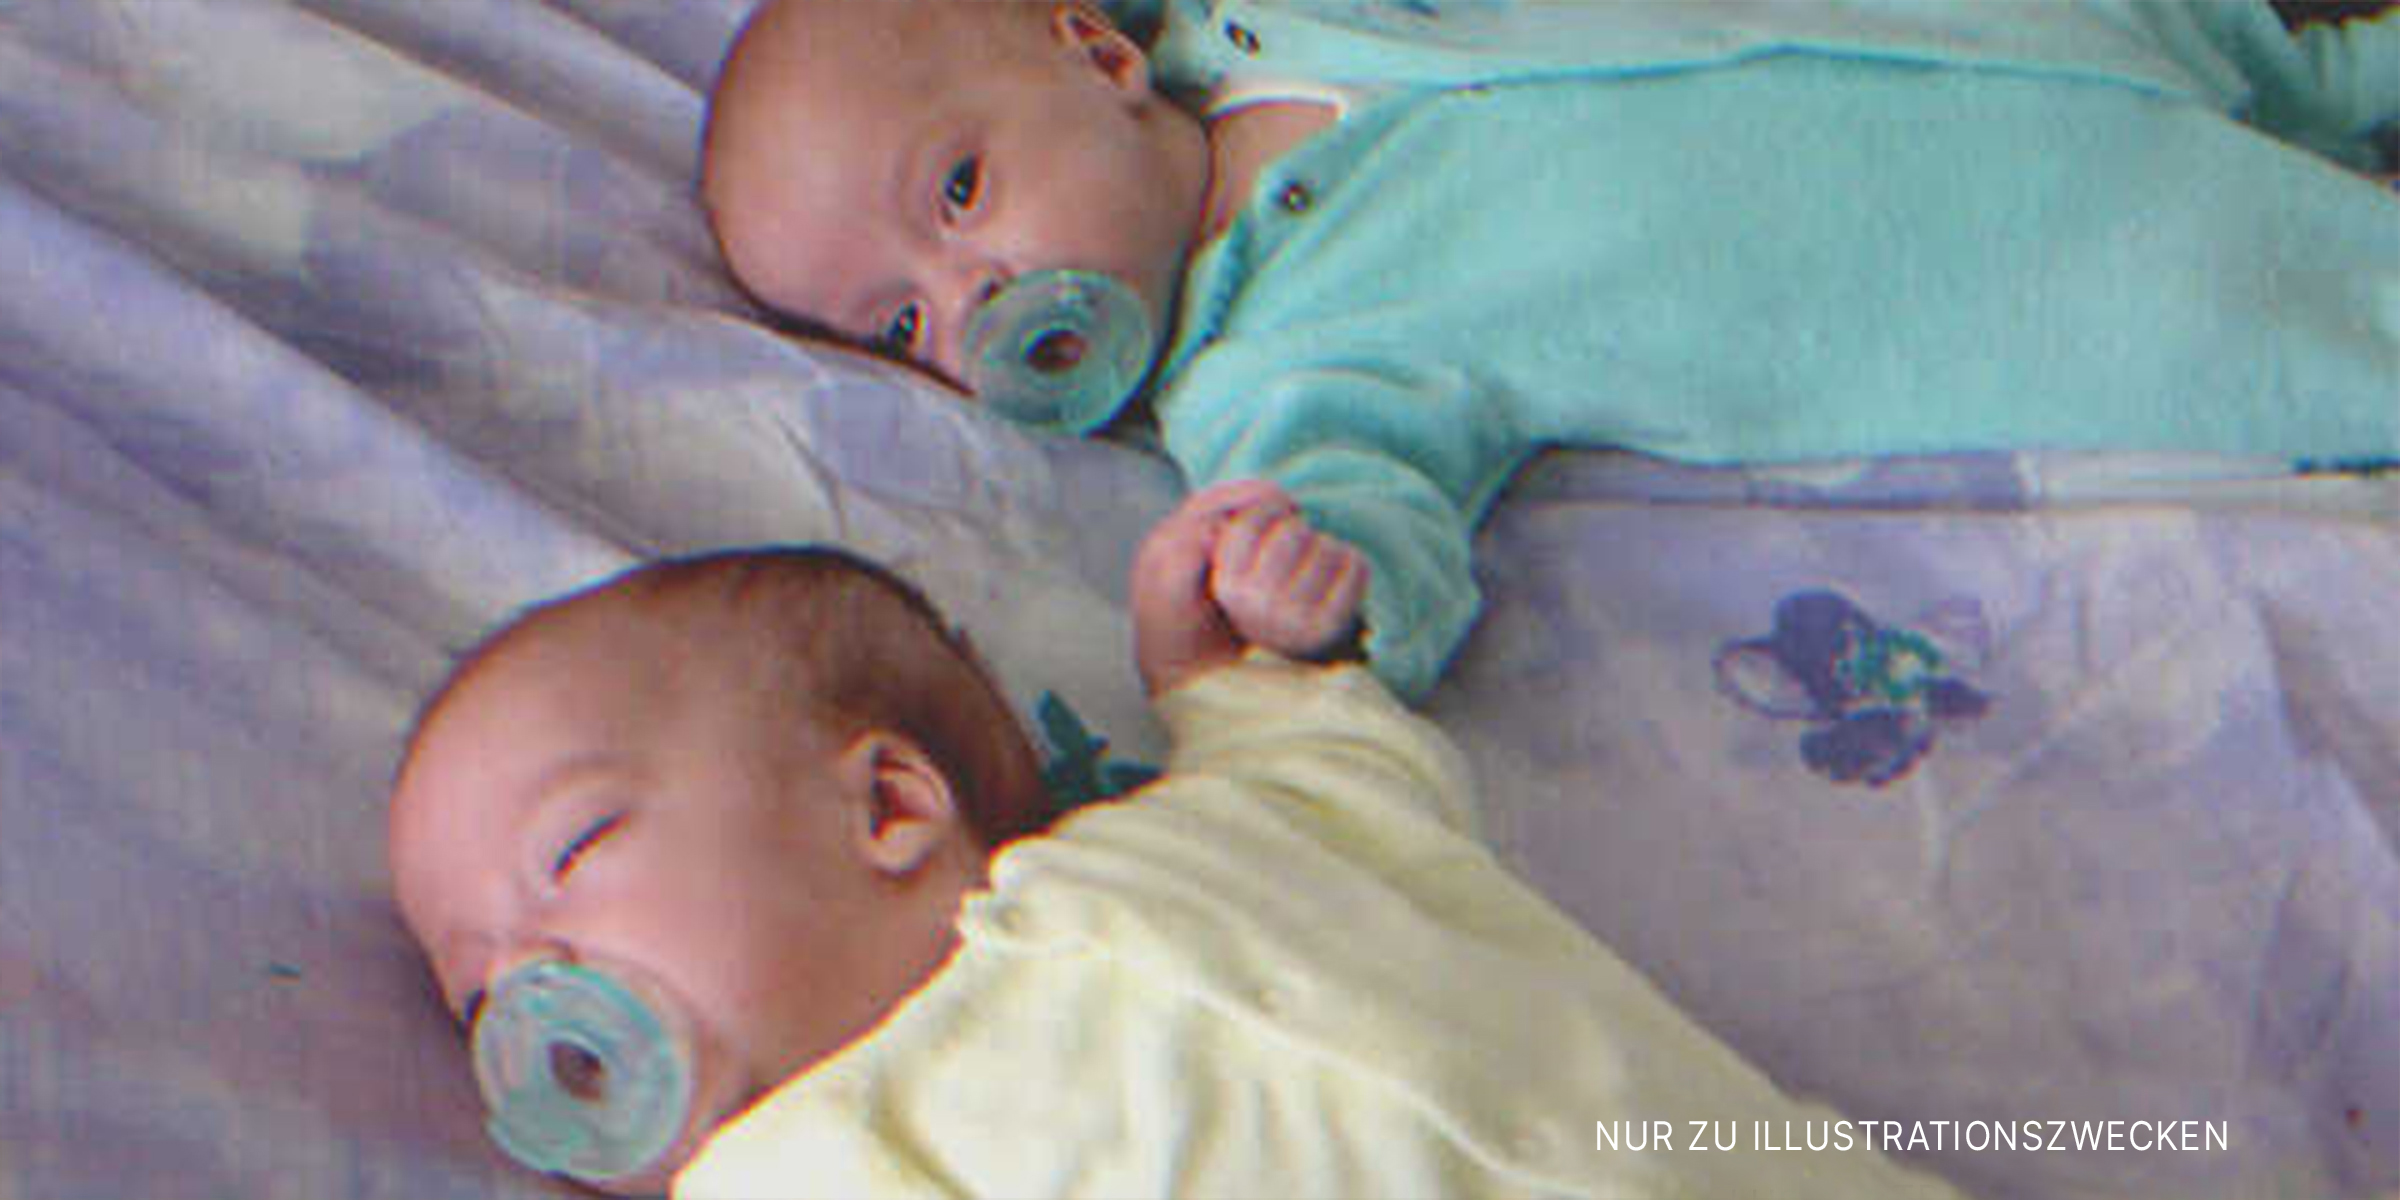 Neugeborene Zwillinge auf dem Bett | Quelle: Flickr/goldberg (CC BY 2.0)